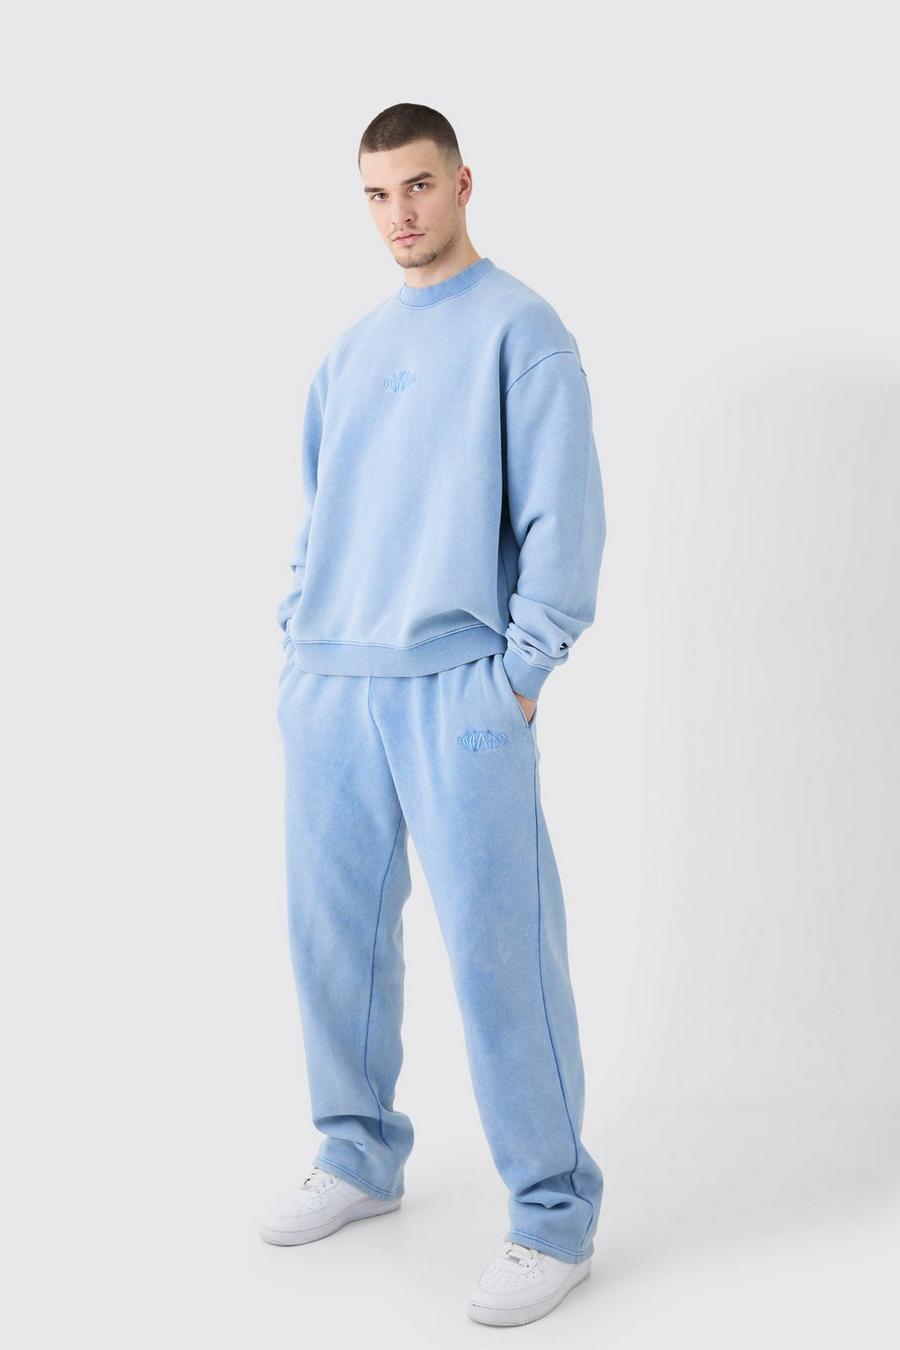 Cornflower blue Tall Man Oversized Boxy Laundered Wash Sweatshirt Tracksuit